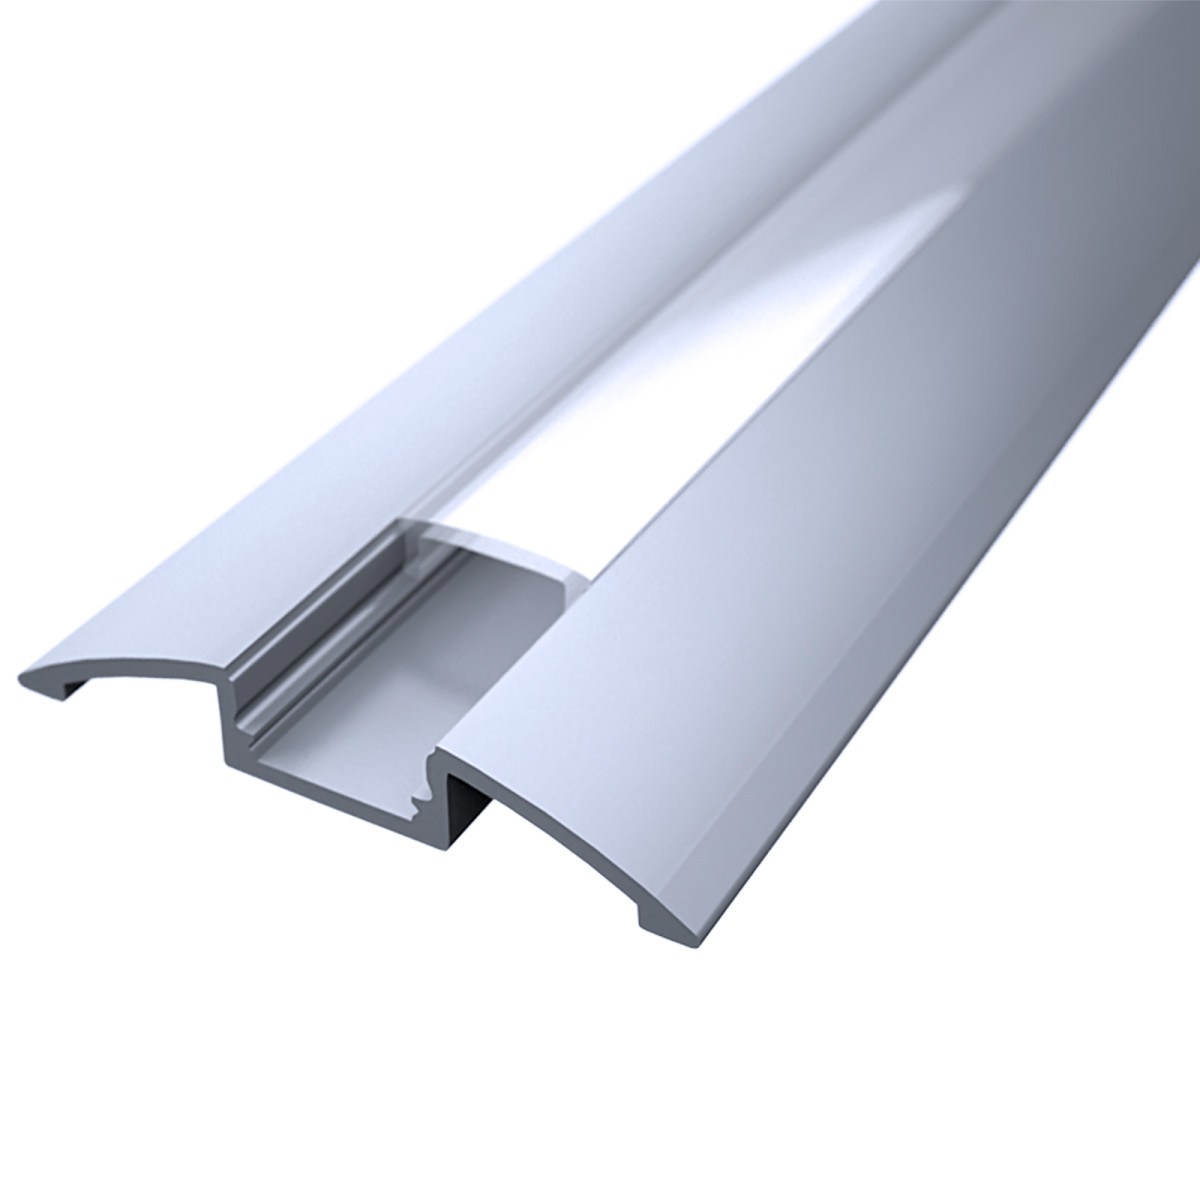 LED Flachprofil "Design-Line" | Abdeckung transparent | Zuschnitt auf 59cm |